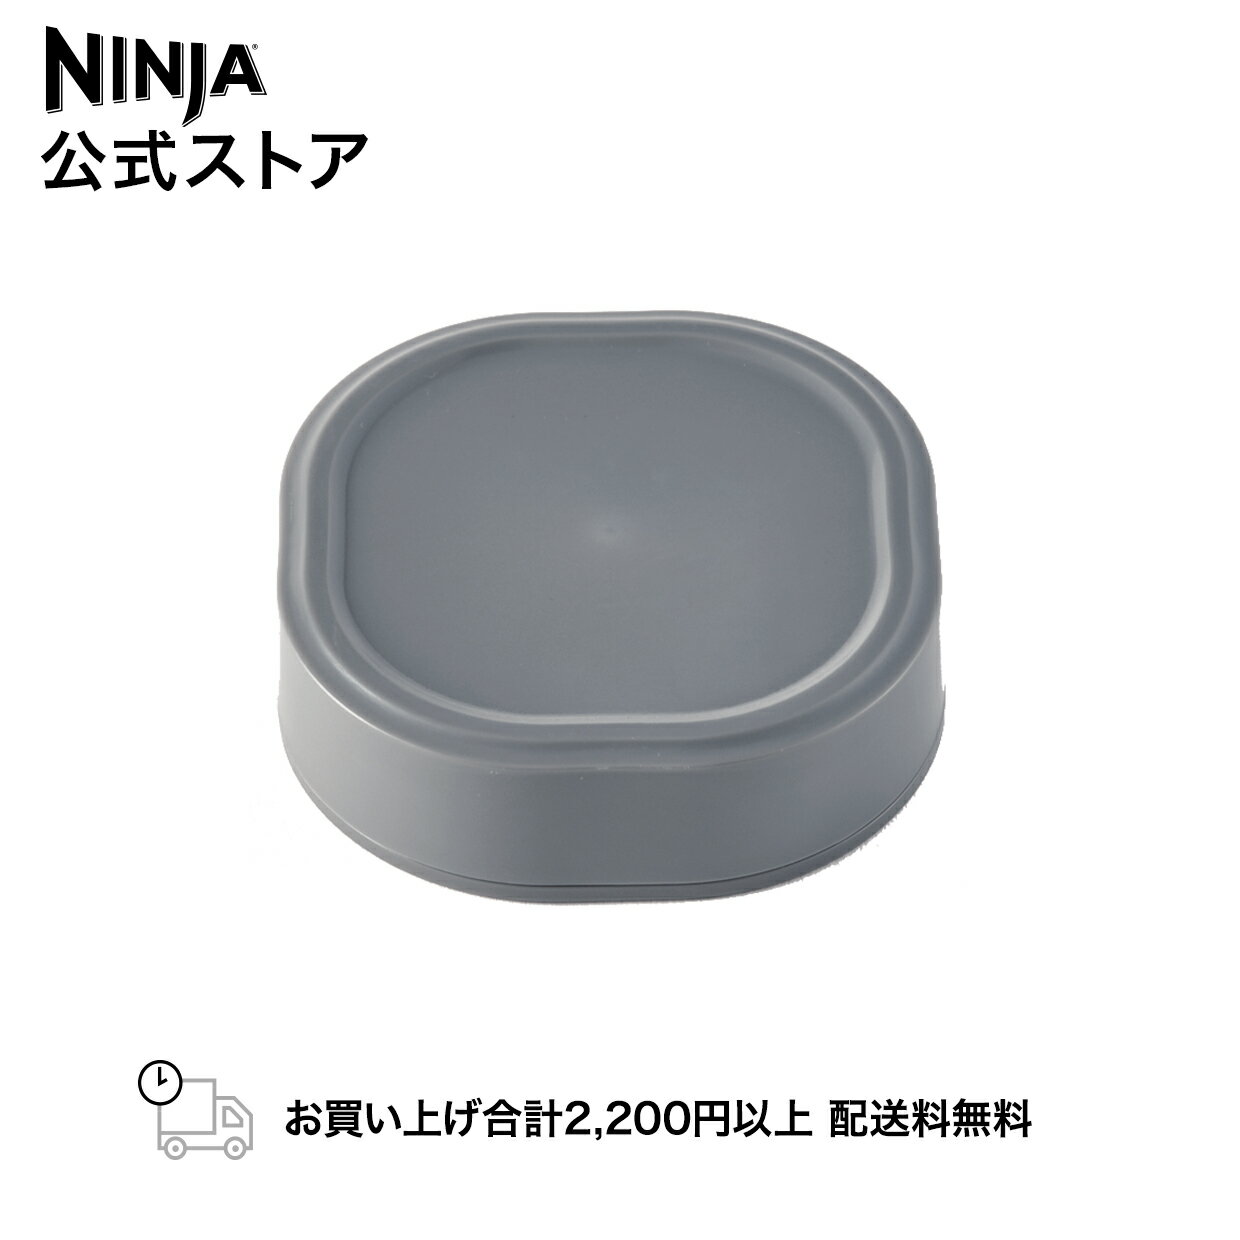 【Ninja 公式】Ninja Blastコードレスミキサー用ボトルカバー 4870KKU151J / シャークニンジャ ミキサー ブレンダー ジューサー タンブラー スムージーミキサー 専用 ボトルカバー